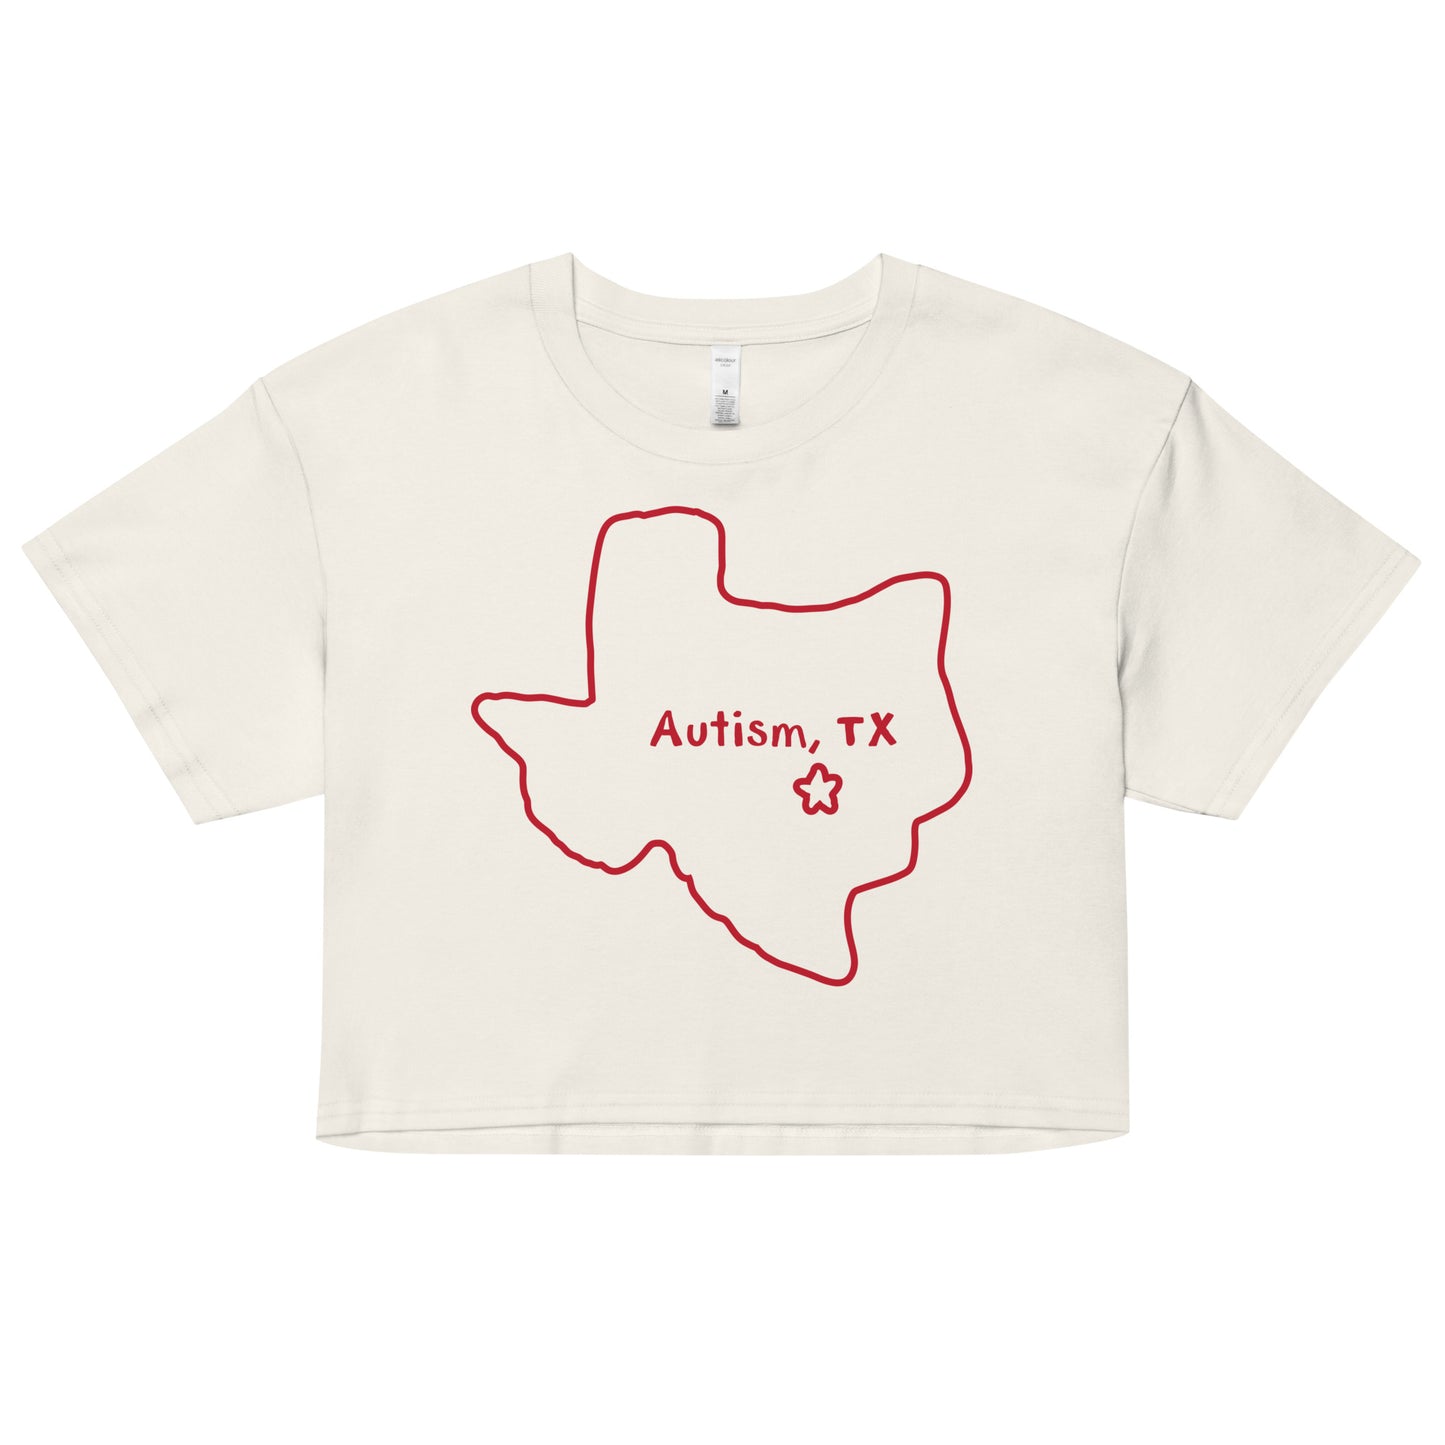 Autism Texas crop top